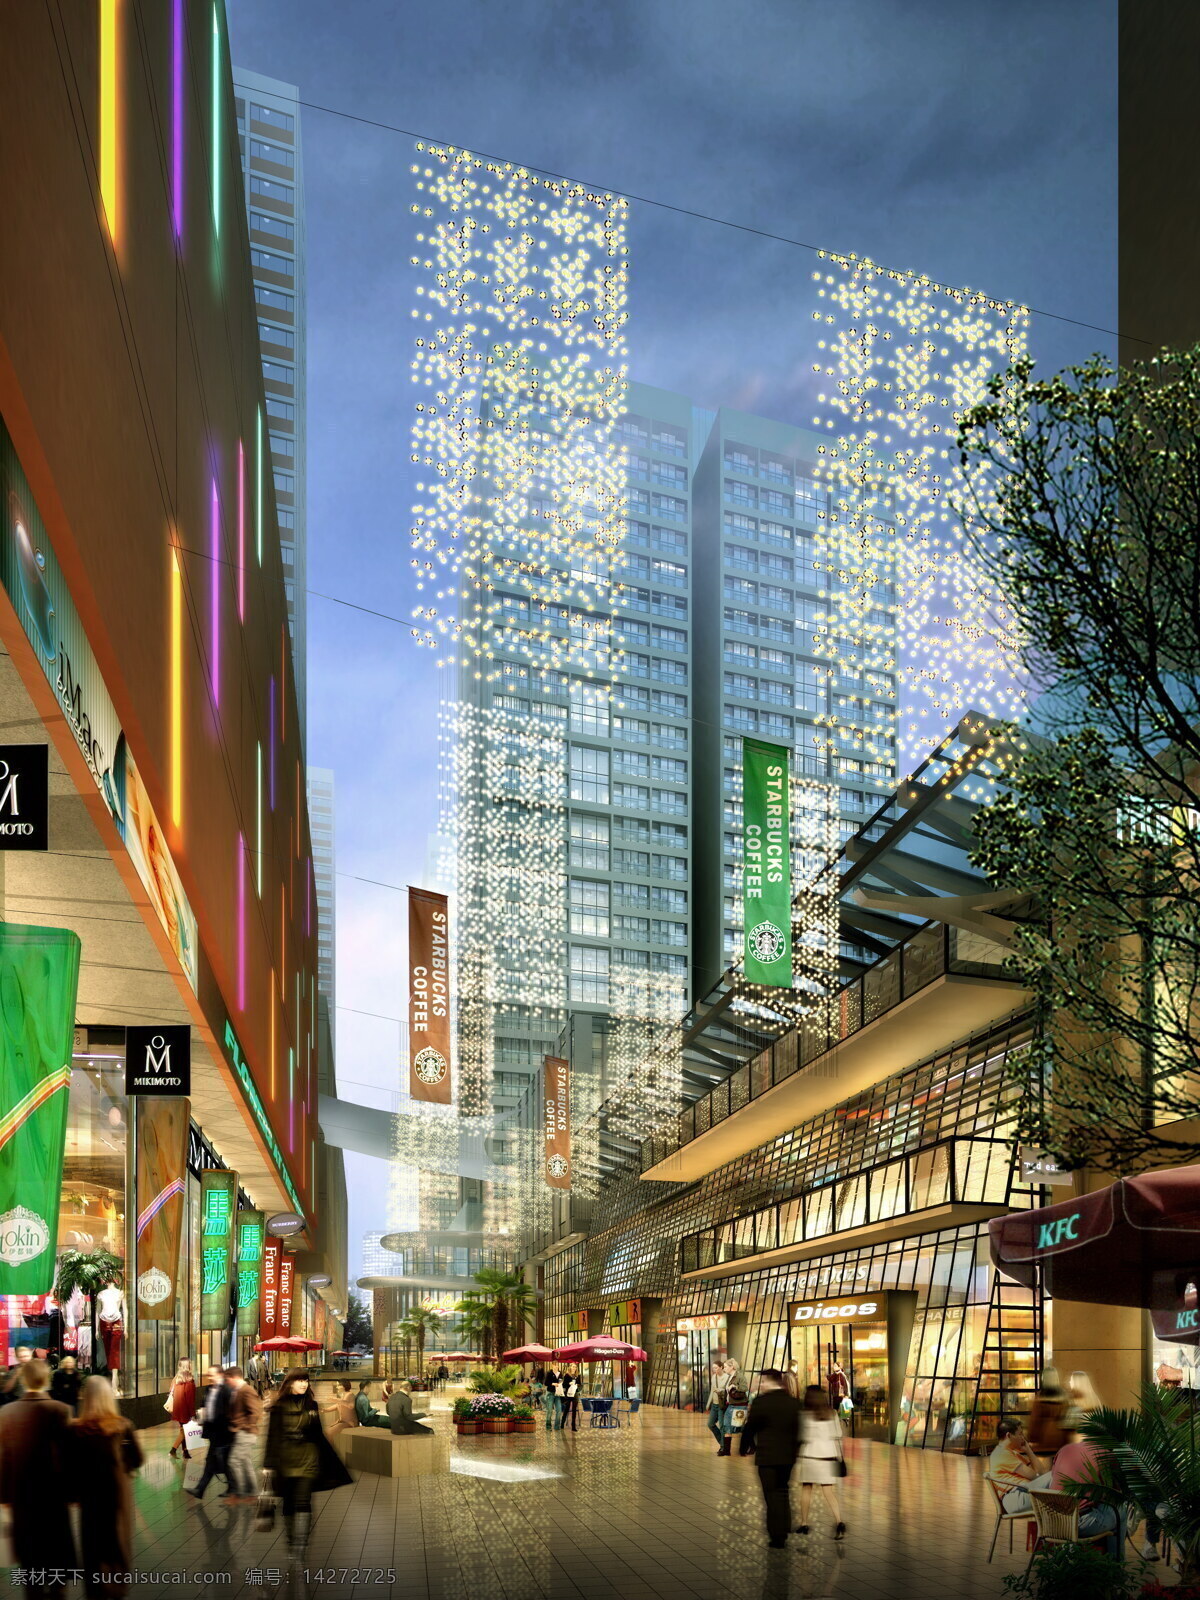 商业 步行街 3d设计 商业综合体 商业内街 商业步行街 商业氛围 精品商业 商业街透视 3d模型素材 其他3d模型